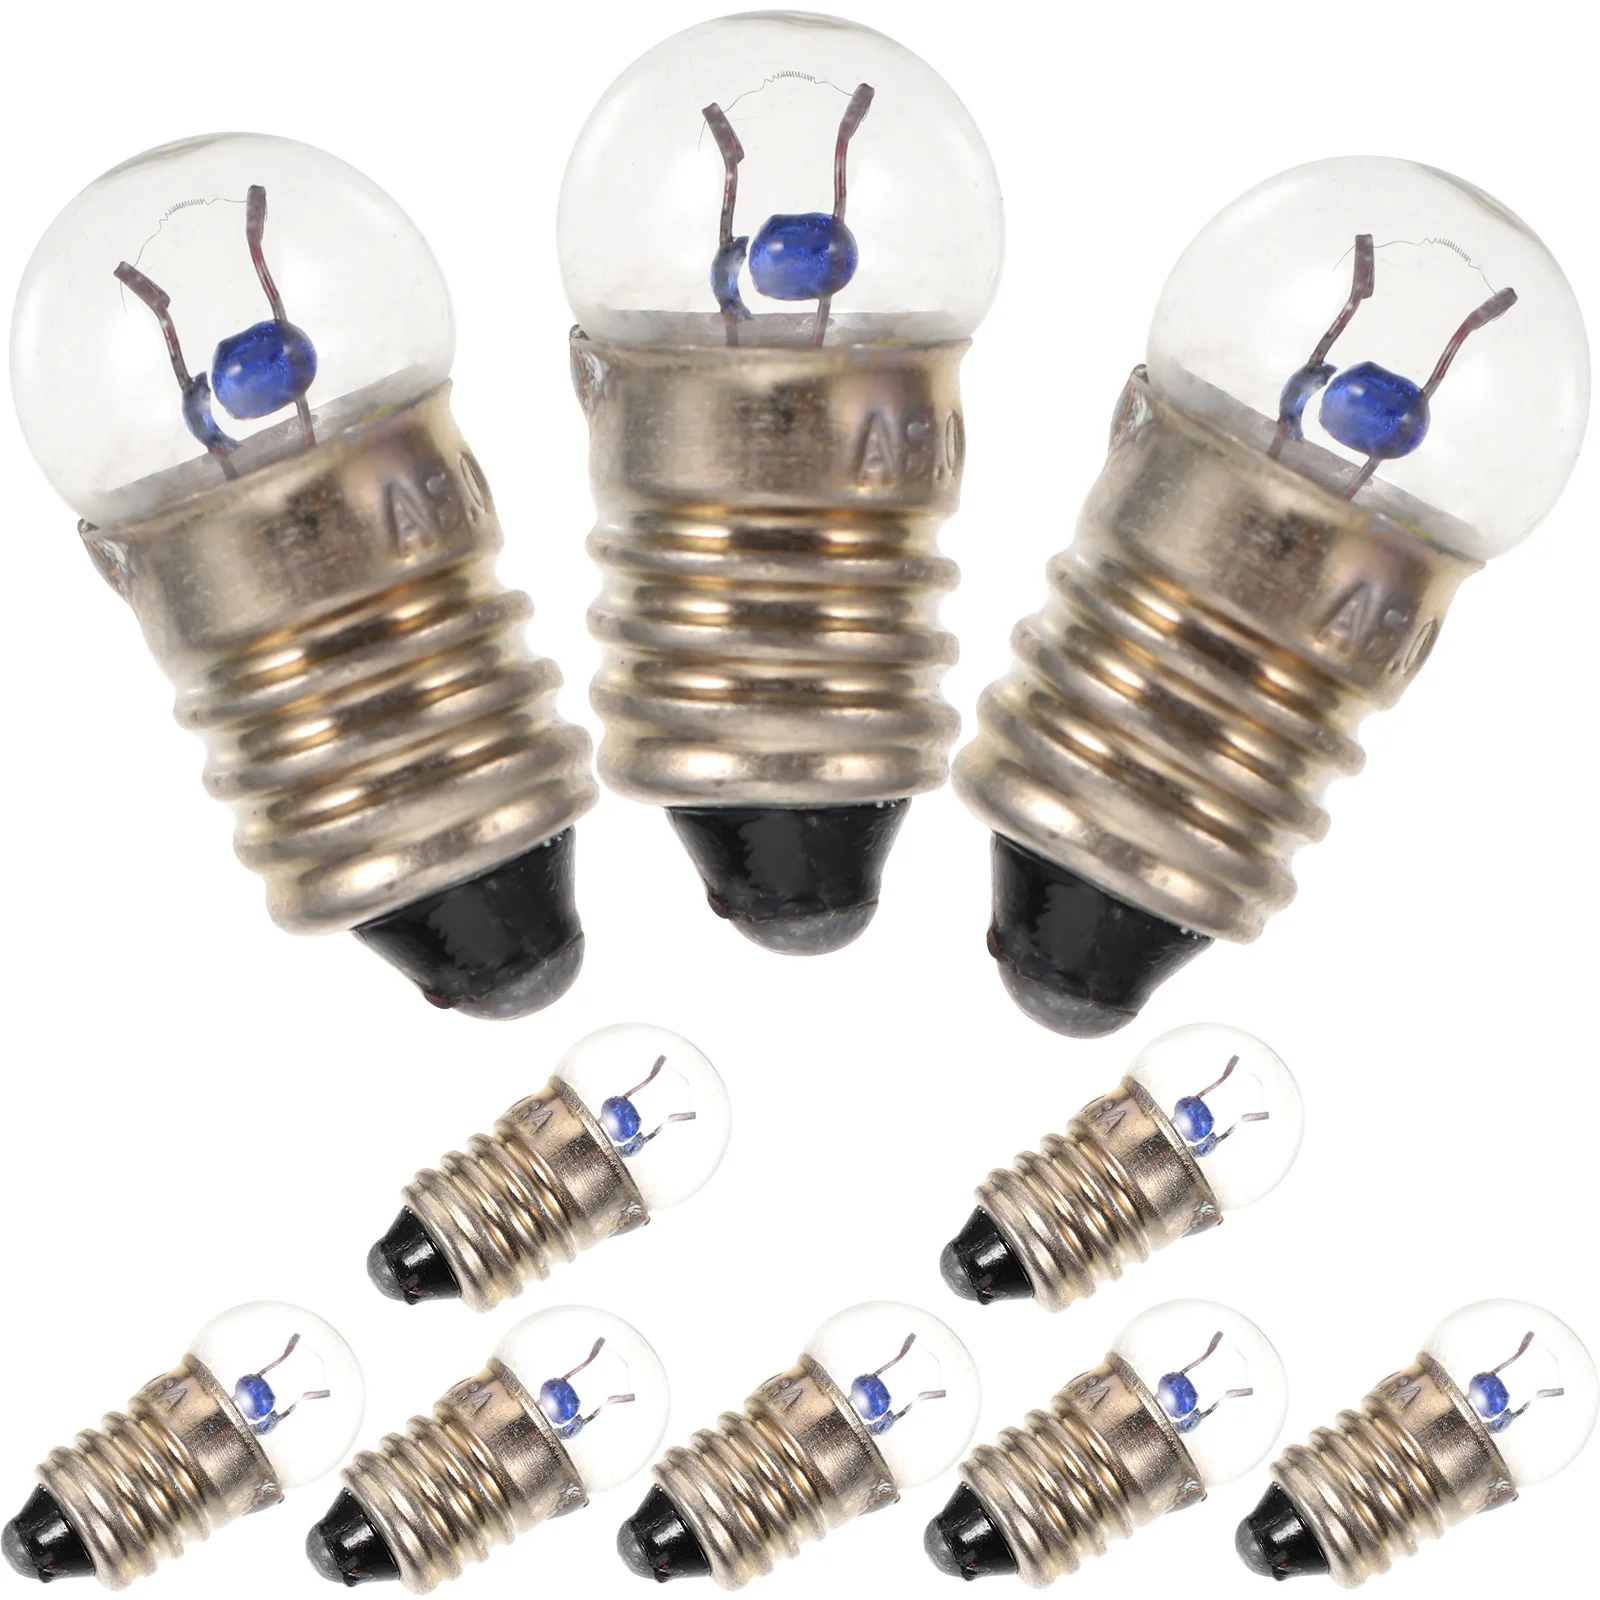 

Фонарик фонарик E10, маленькая электрическая лампочка, лампочка 2,5 в, а, для студентов, физических экспериментов, маленькая лампочка, лампочка